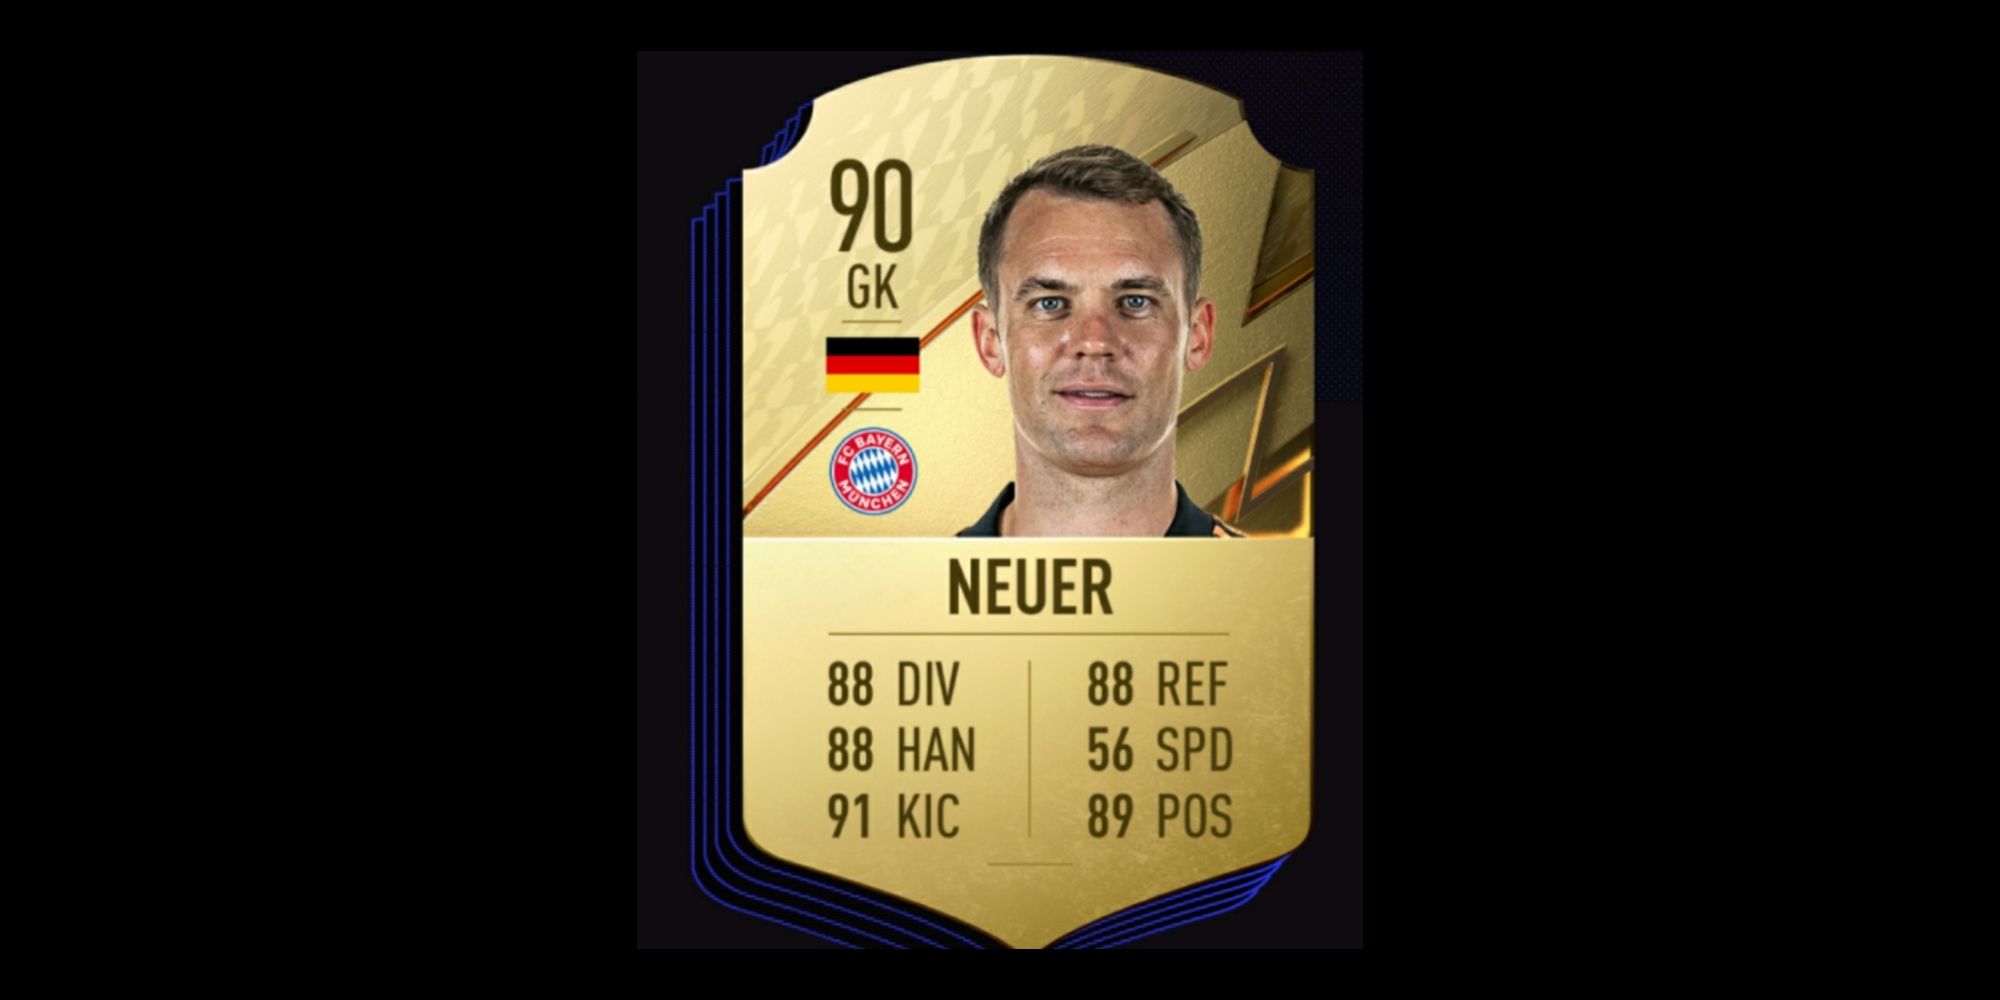 Neuer card in FIFA 22